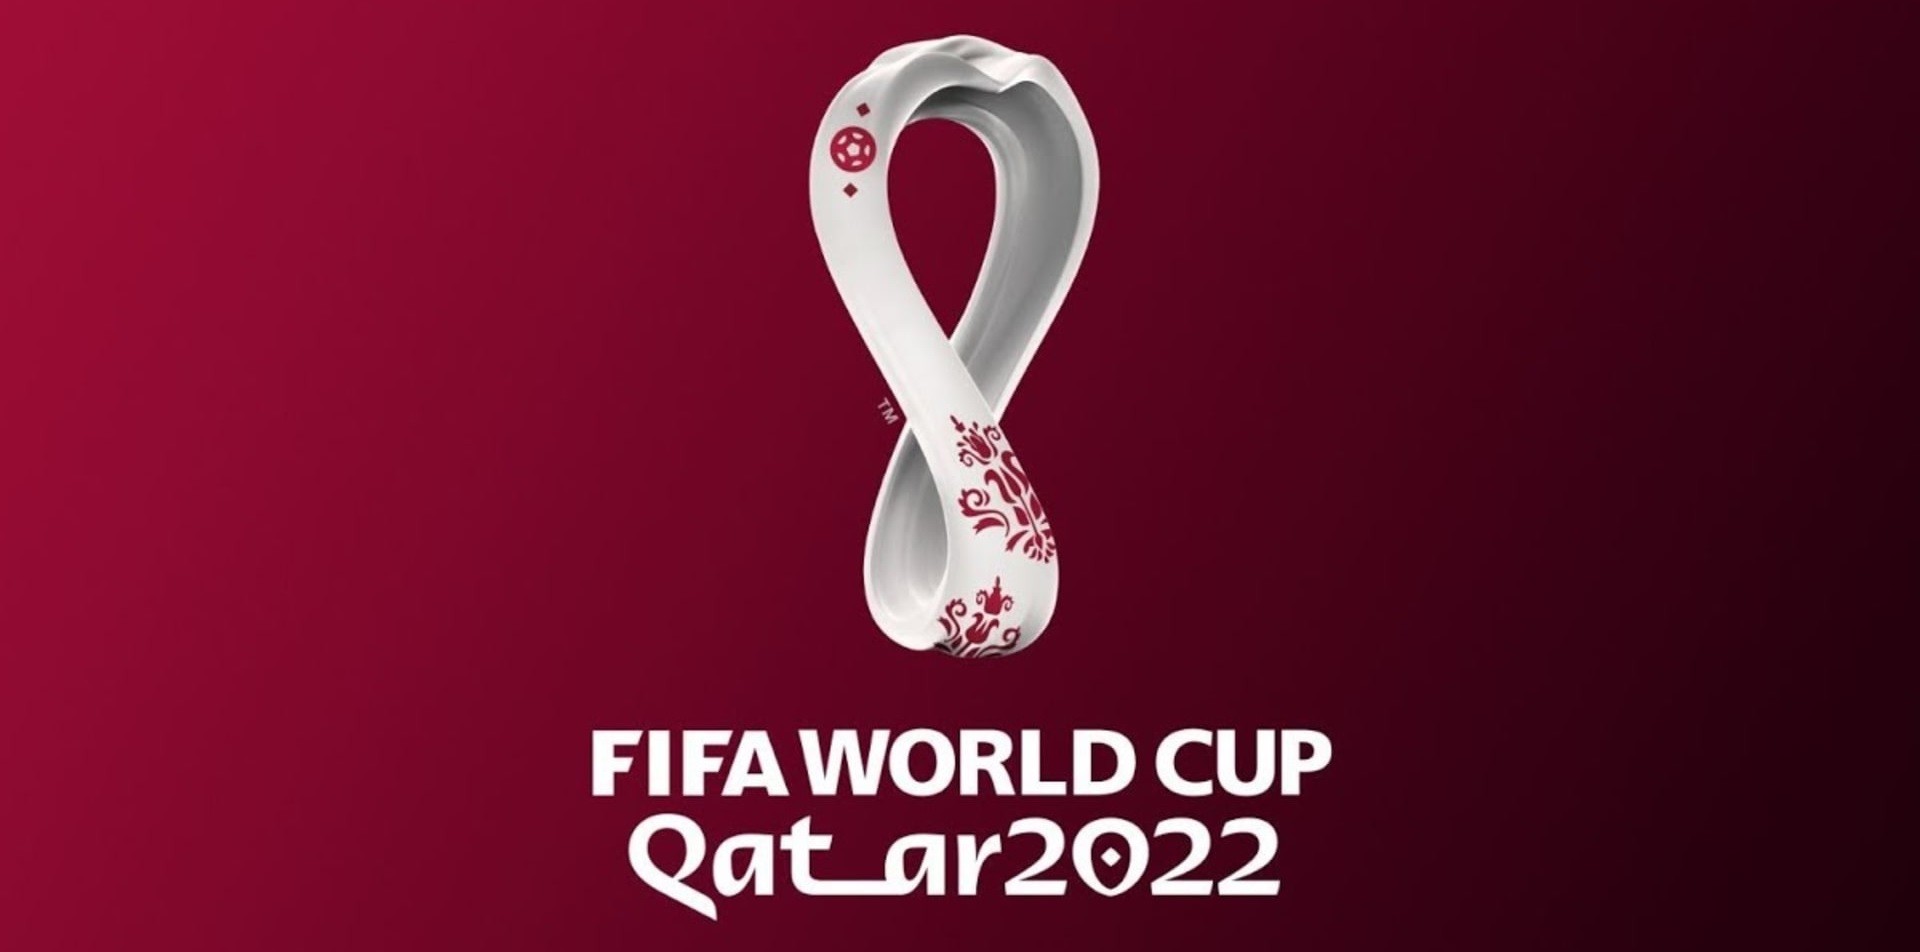 Modelo de jogos da fase de grupos da copa do mundo de 2022